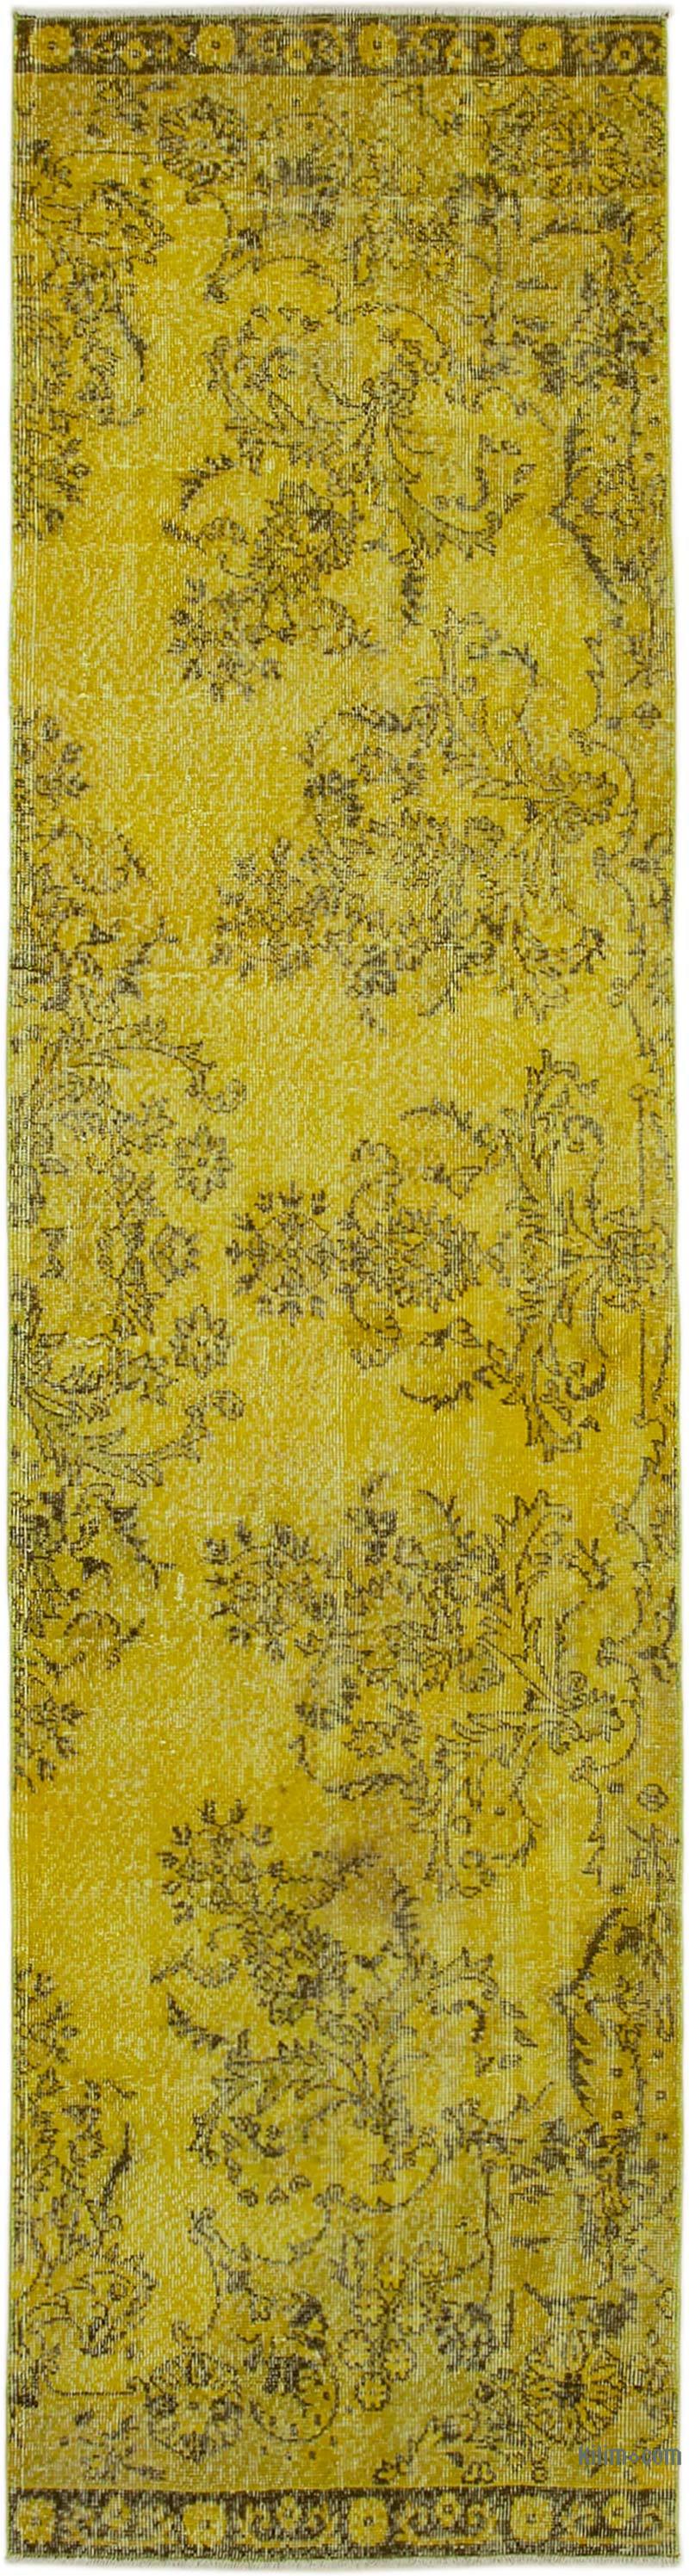 Sarı Boyalı El Dokuma Vintage Halı Yolluk - 85 cm x 337 cm - K0052131